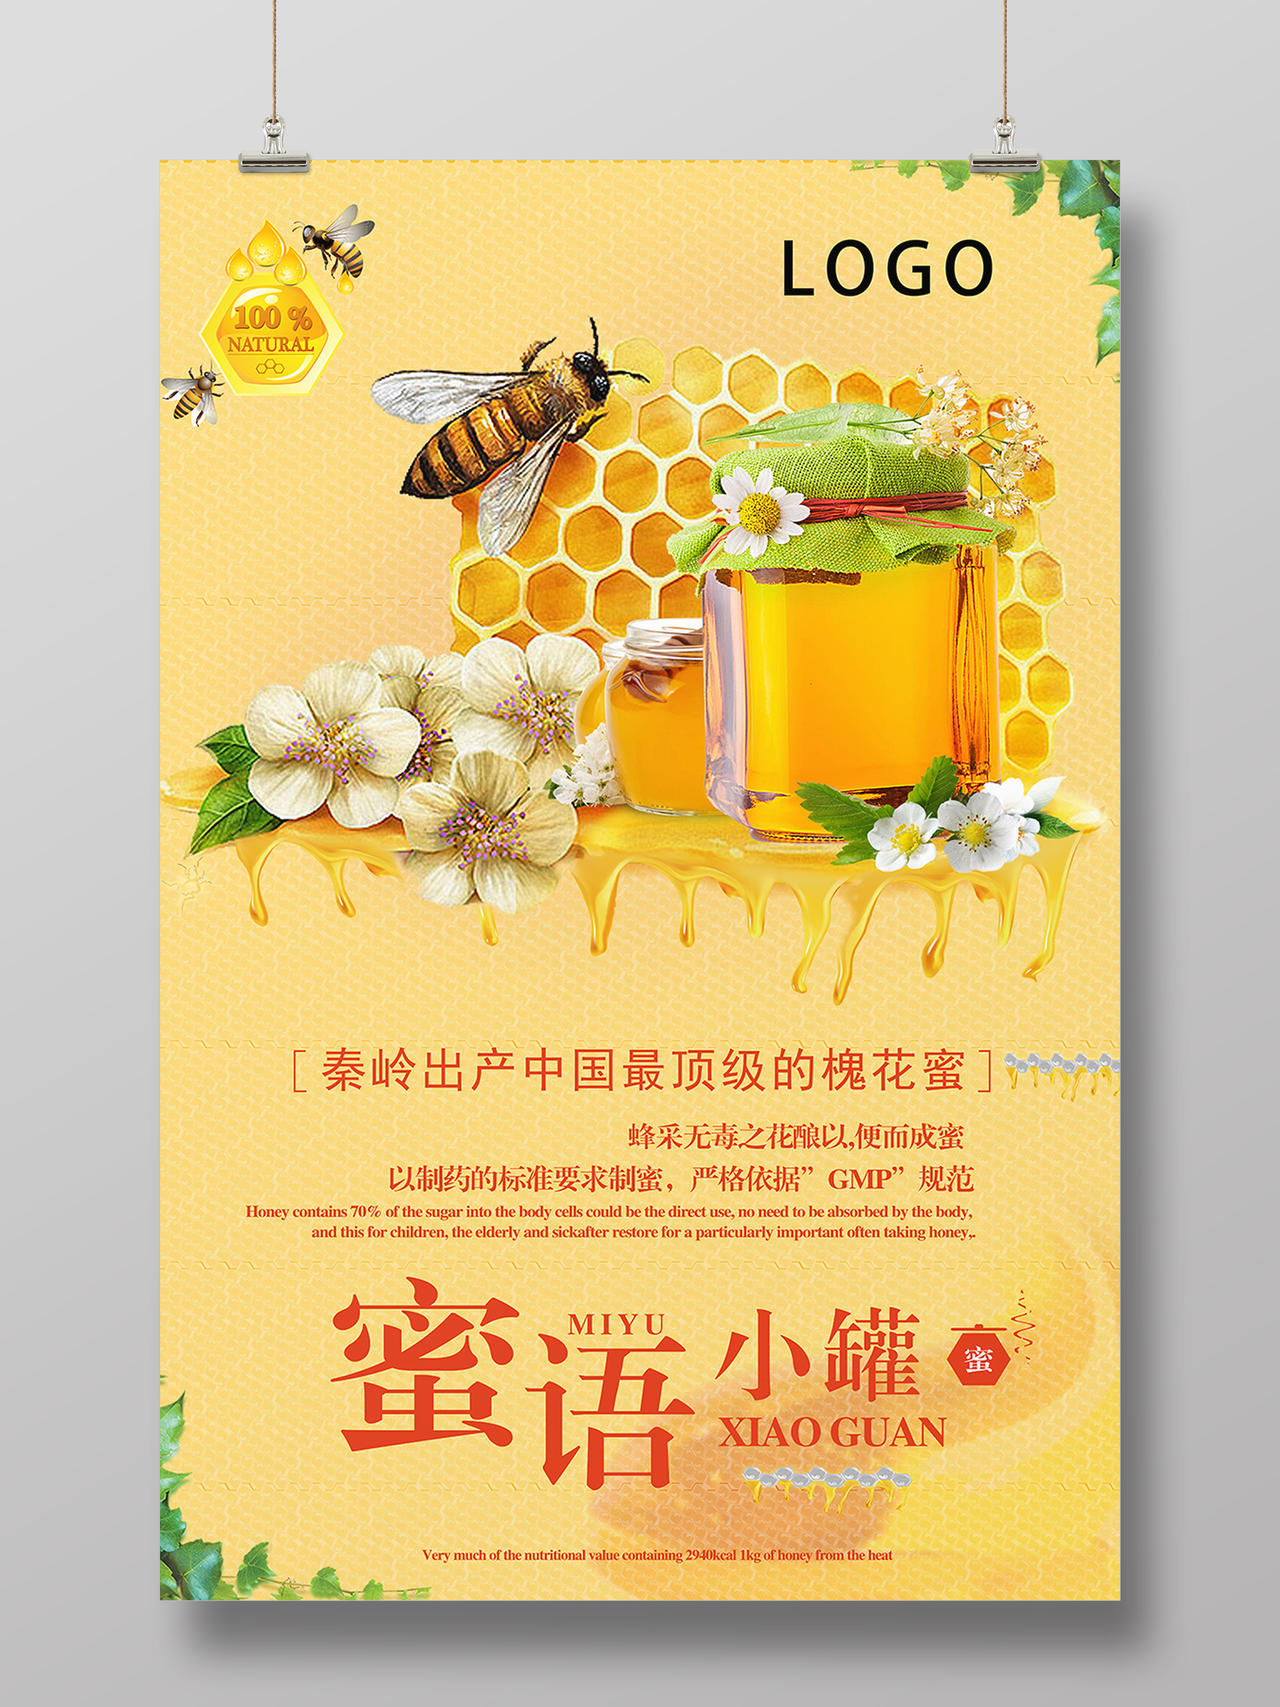 自然槐花蜂蜜产品促销广告宣传海报